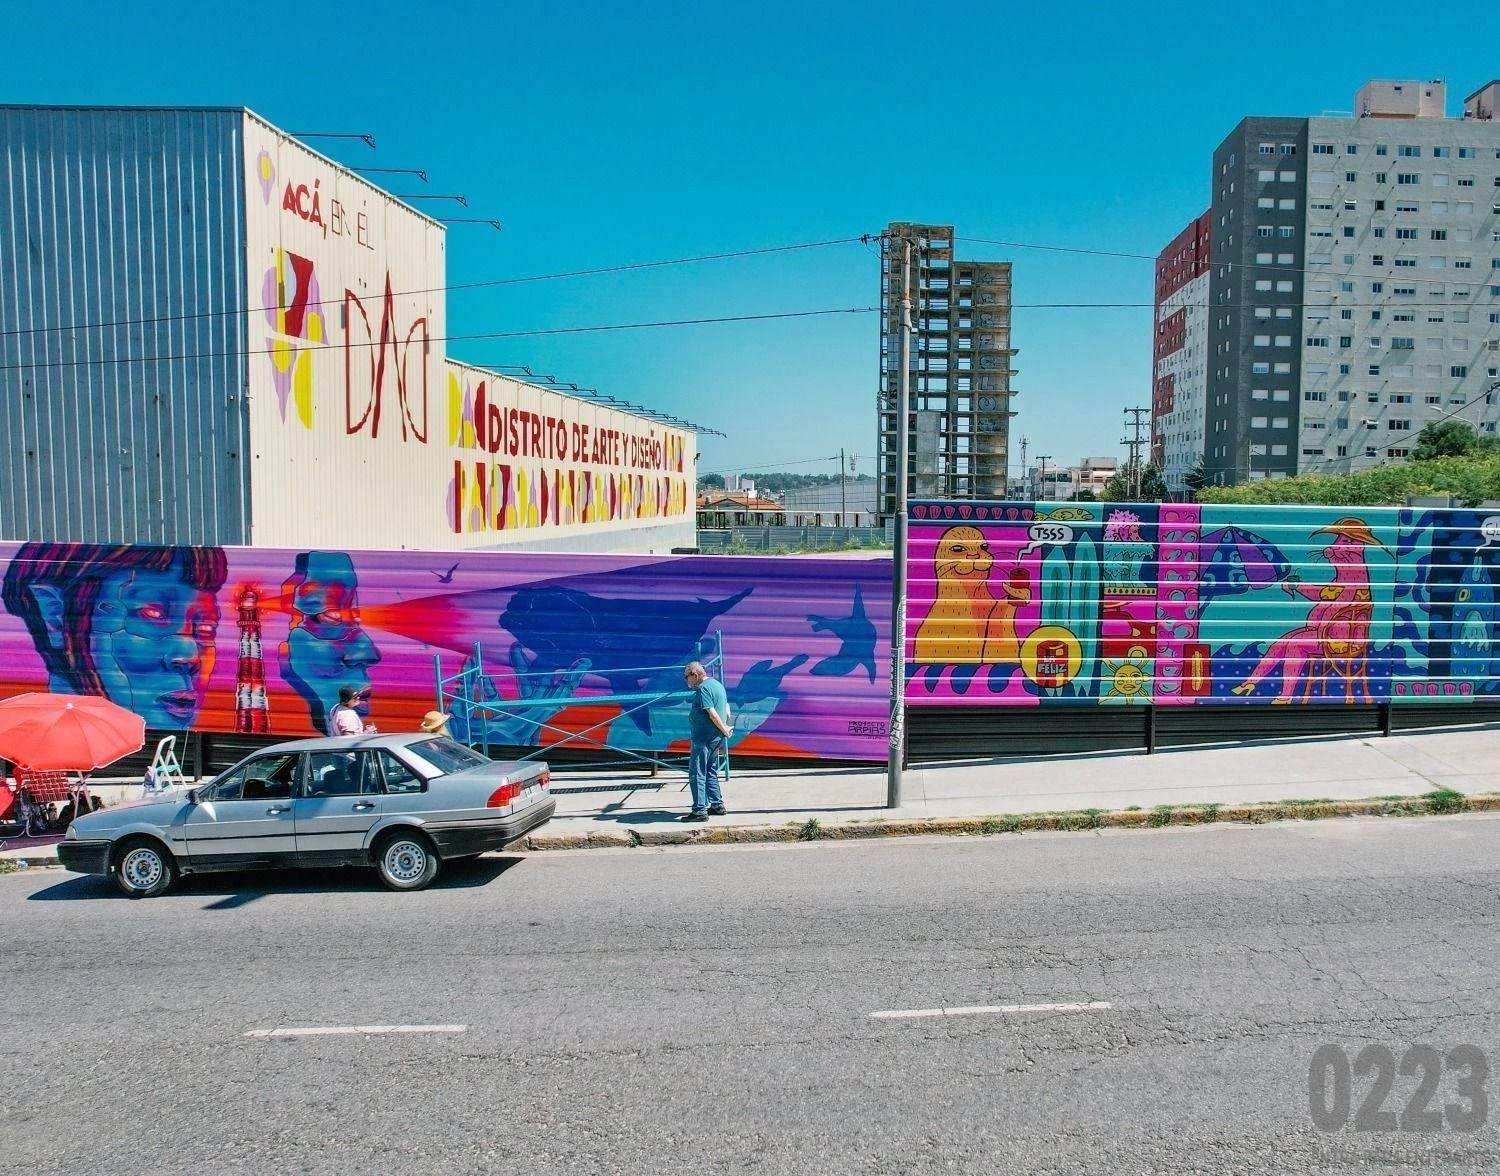 Los nuevos murales en el DAD: el distrito de arte y diseño que busca transformarse en una postal de Mar del Plata. Foto: 0223.